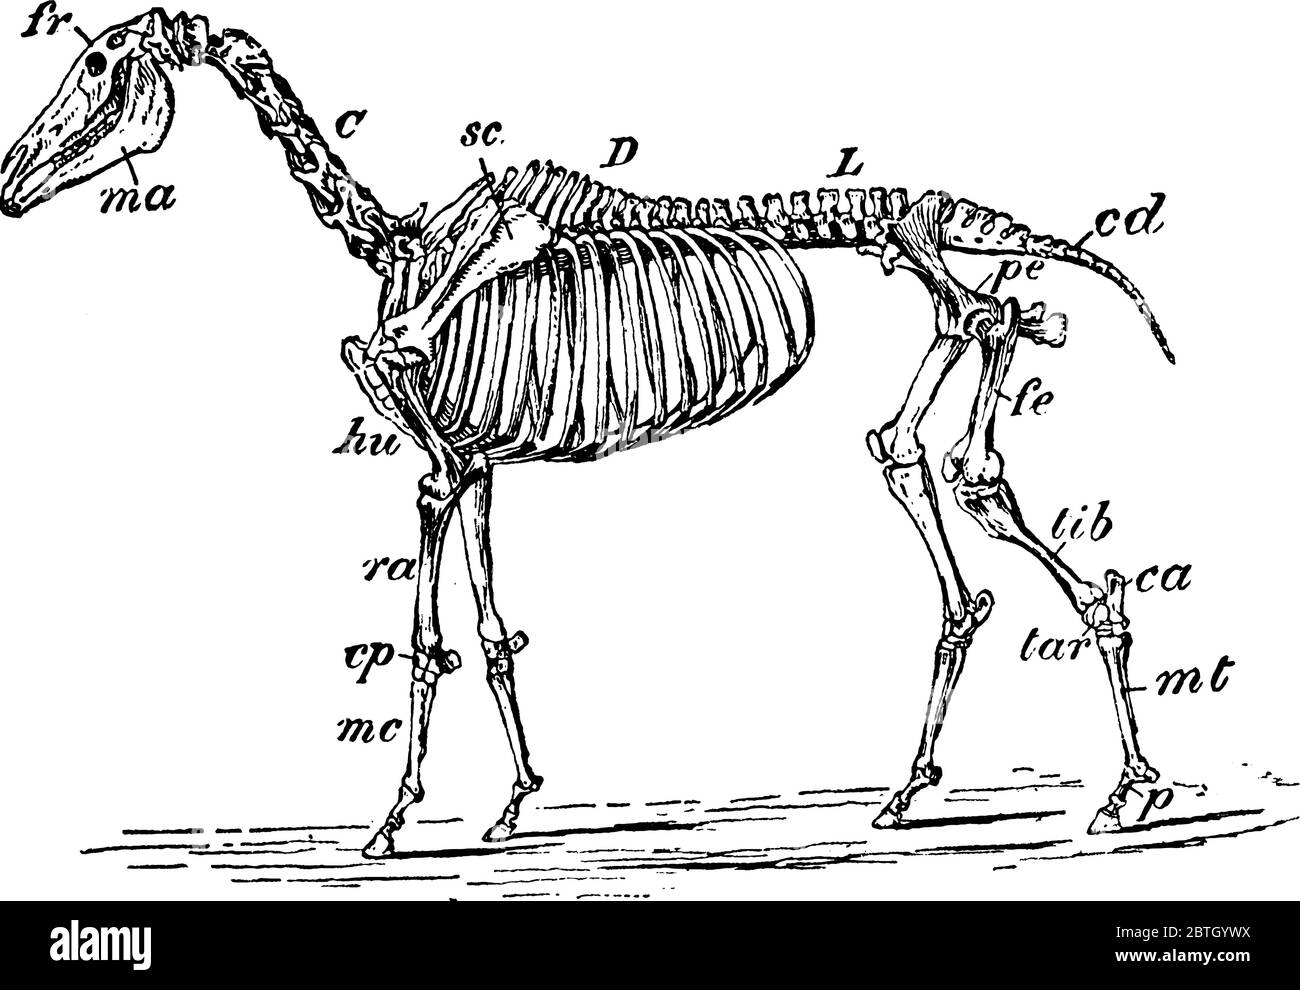 Le squelette d'un cheval, avec ses parties, étiqueté, dessin de ligne vintage ou illustration de gravure. Illustration de Vecteur